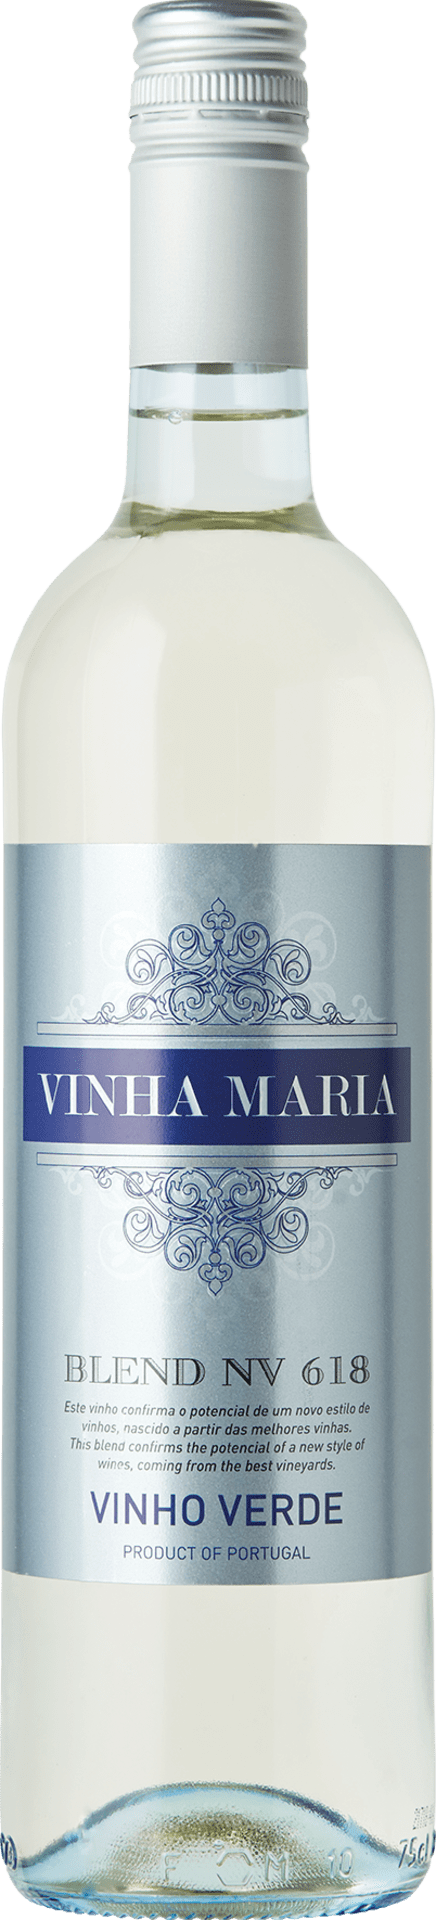 Vinha Maria Vinho Verde